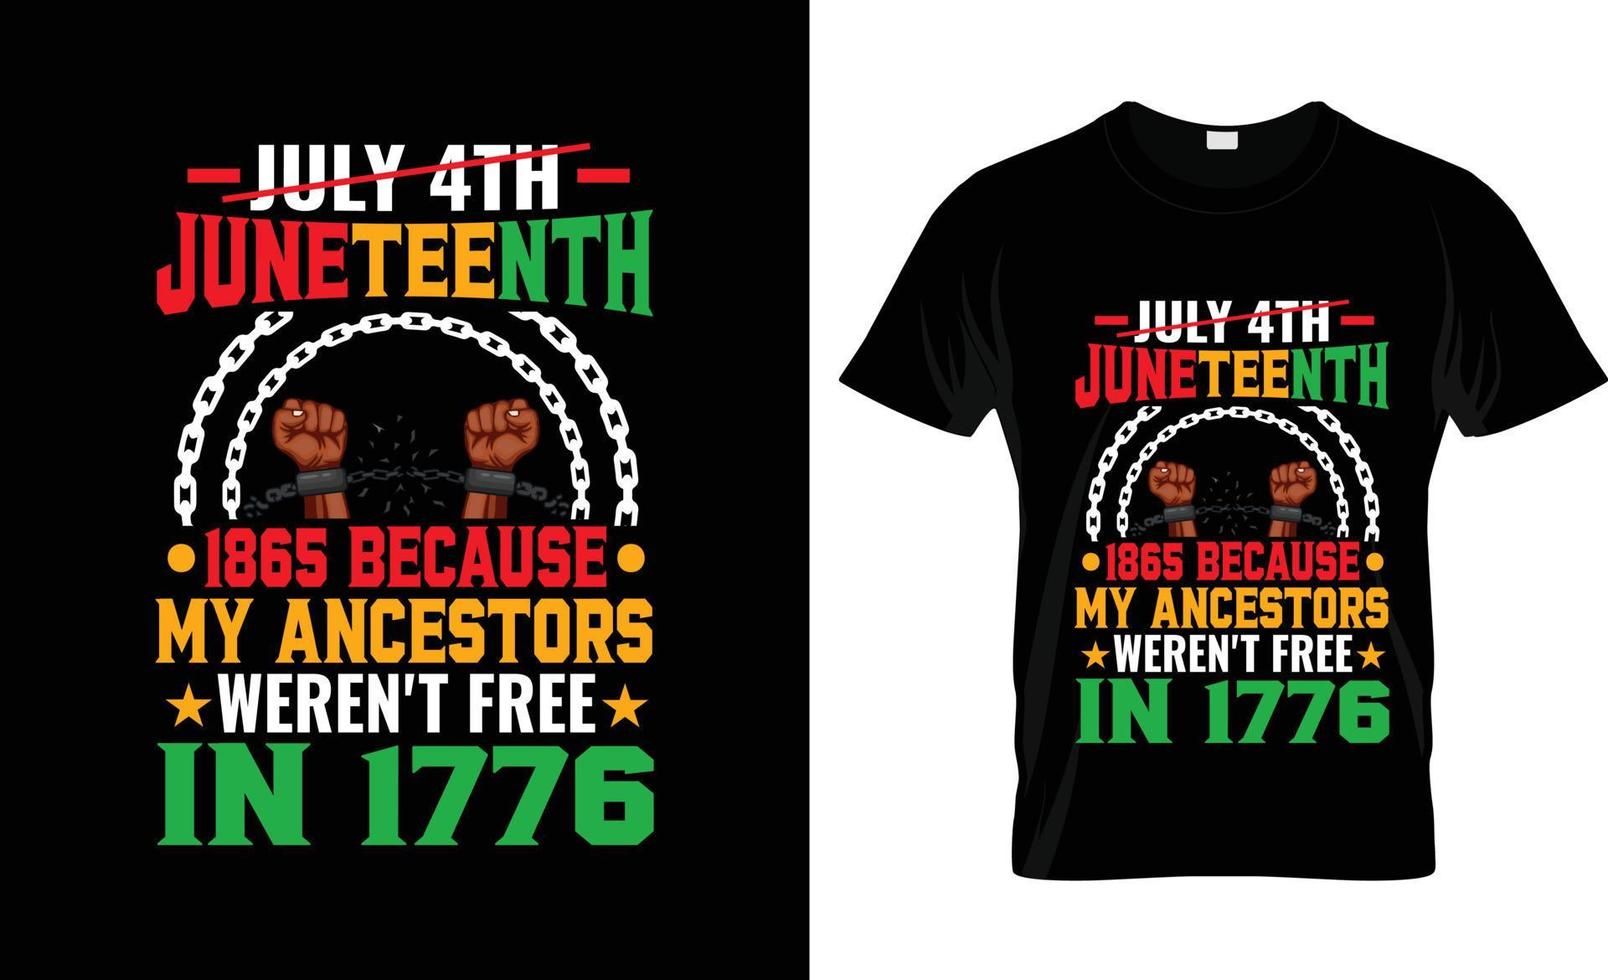 diseño de camisetas del 19 de junio, lema de la camiseta del 19 de junio y diseño de prendas de vestir, tipografía del 19 de junio, vector del 19 de junio, ilustración del 19 de junio